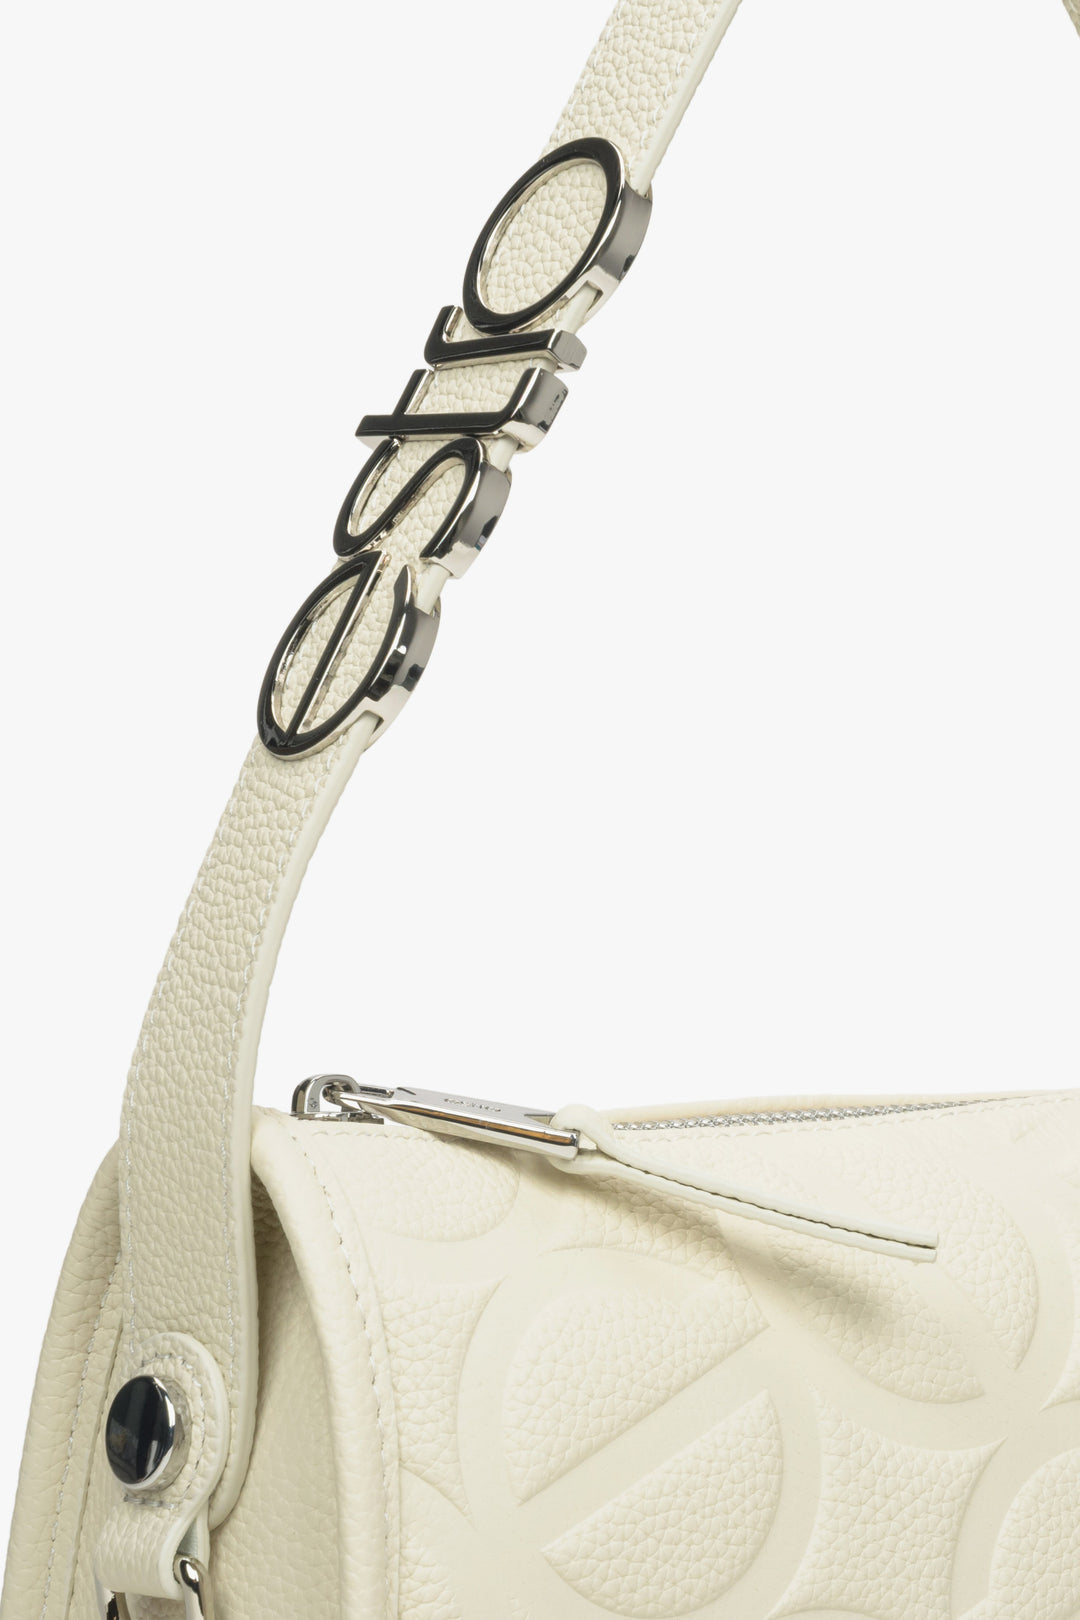 Women's cream beige shoulder bag - a close-up on details.